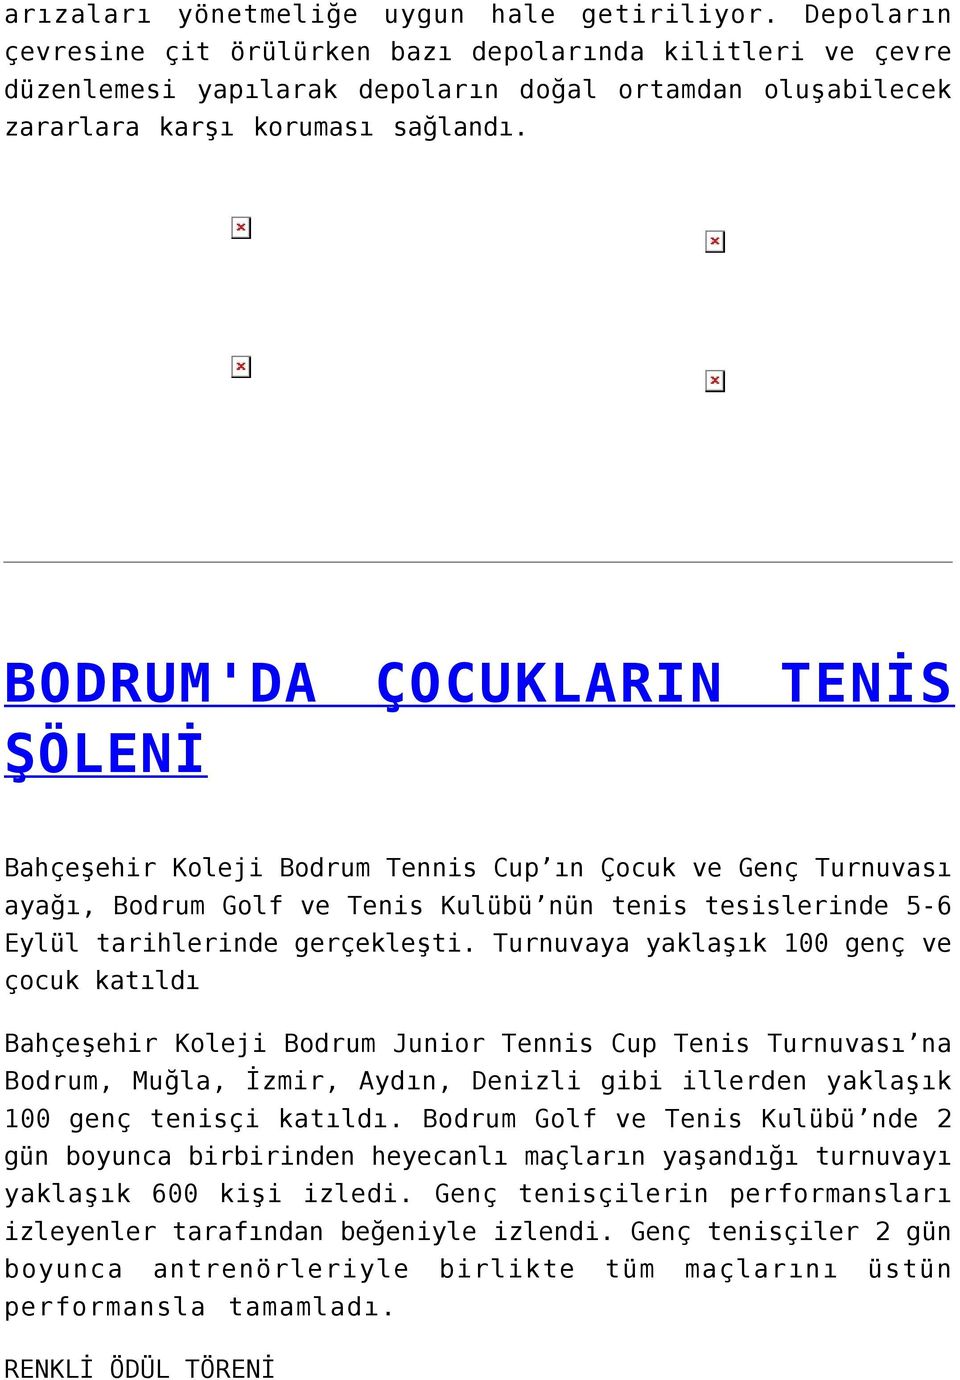 BODRUM'DA ŞÖLENİ ÇOCUKLARIN TENİS Bahçeşehir Koleji Bodrum Tennis Cup ın Çocuk ve Genç Turnuvası ayağı, Bodrum Golf ve Tenis Kulübü nün tenis tesislerinde 5-6 Eylül tarihlerinde gerçekleşti.